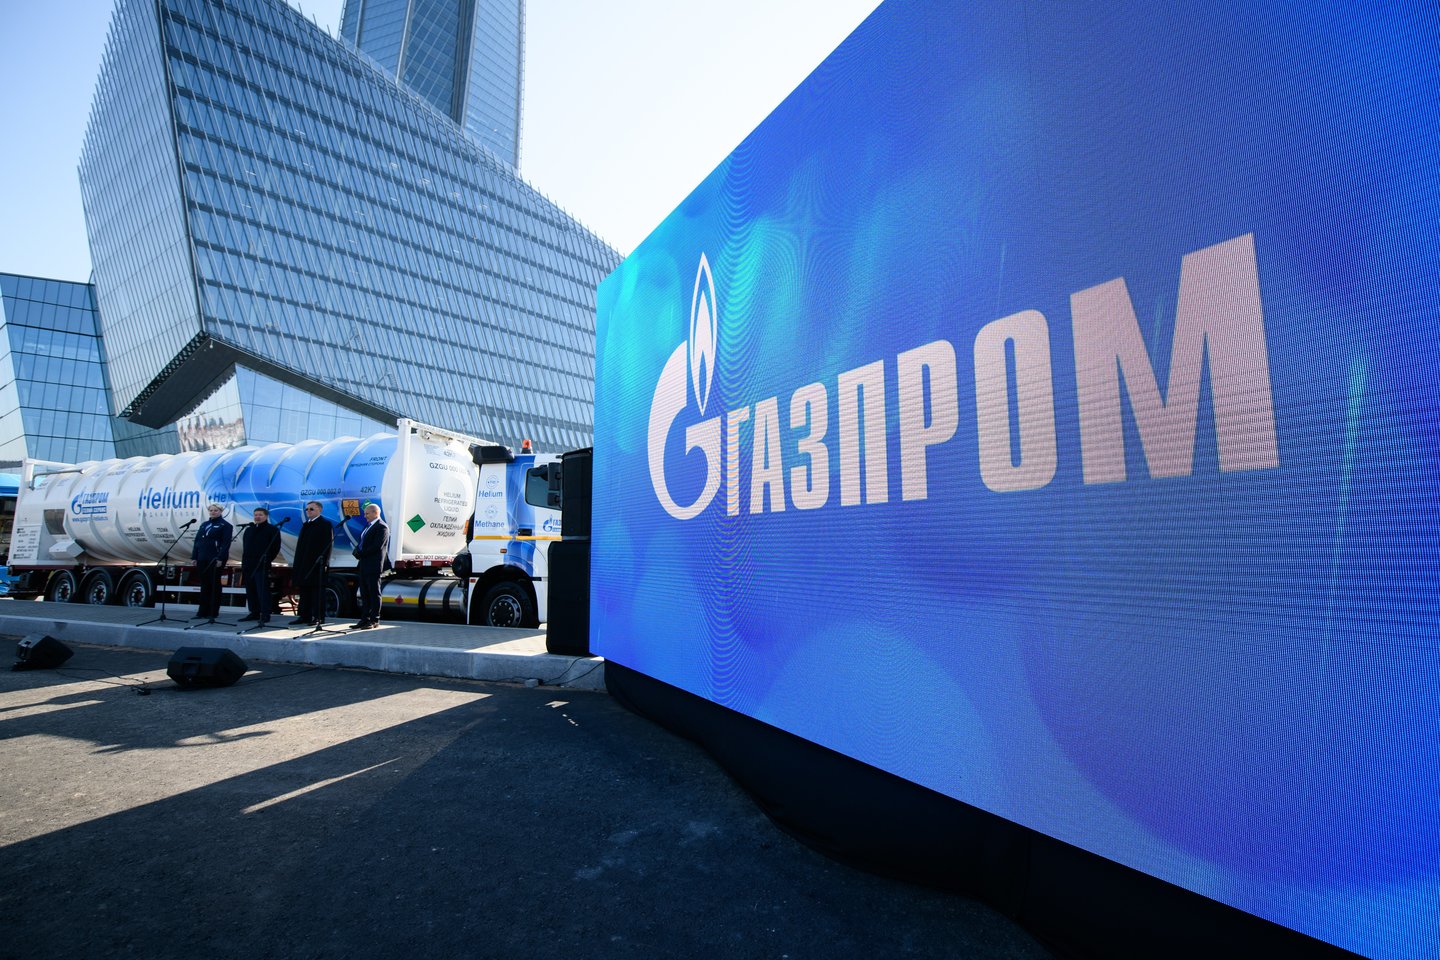 Karui prasidėjus tiesiogine prasme sprogo rusiški dujų vamzdynai ir tariamas tiekimo stabilumas, atvėręs dideles spragas ir krizę Europos energijos rinkoje.<br>Gazprom.com asociatyvi nuotr.